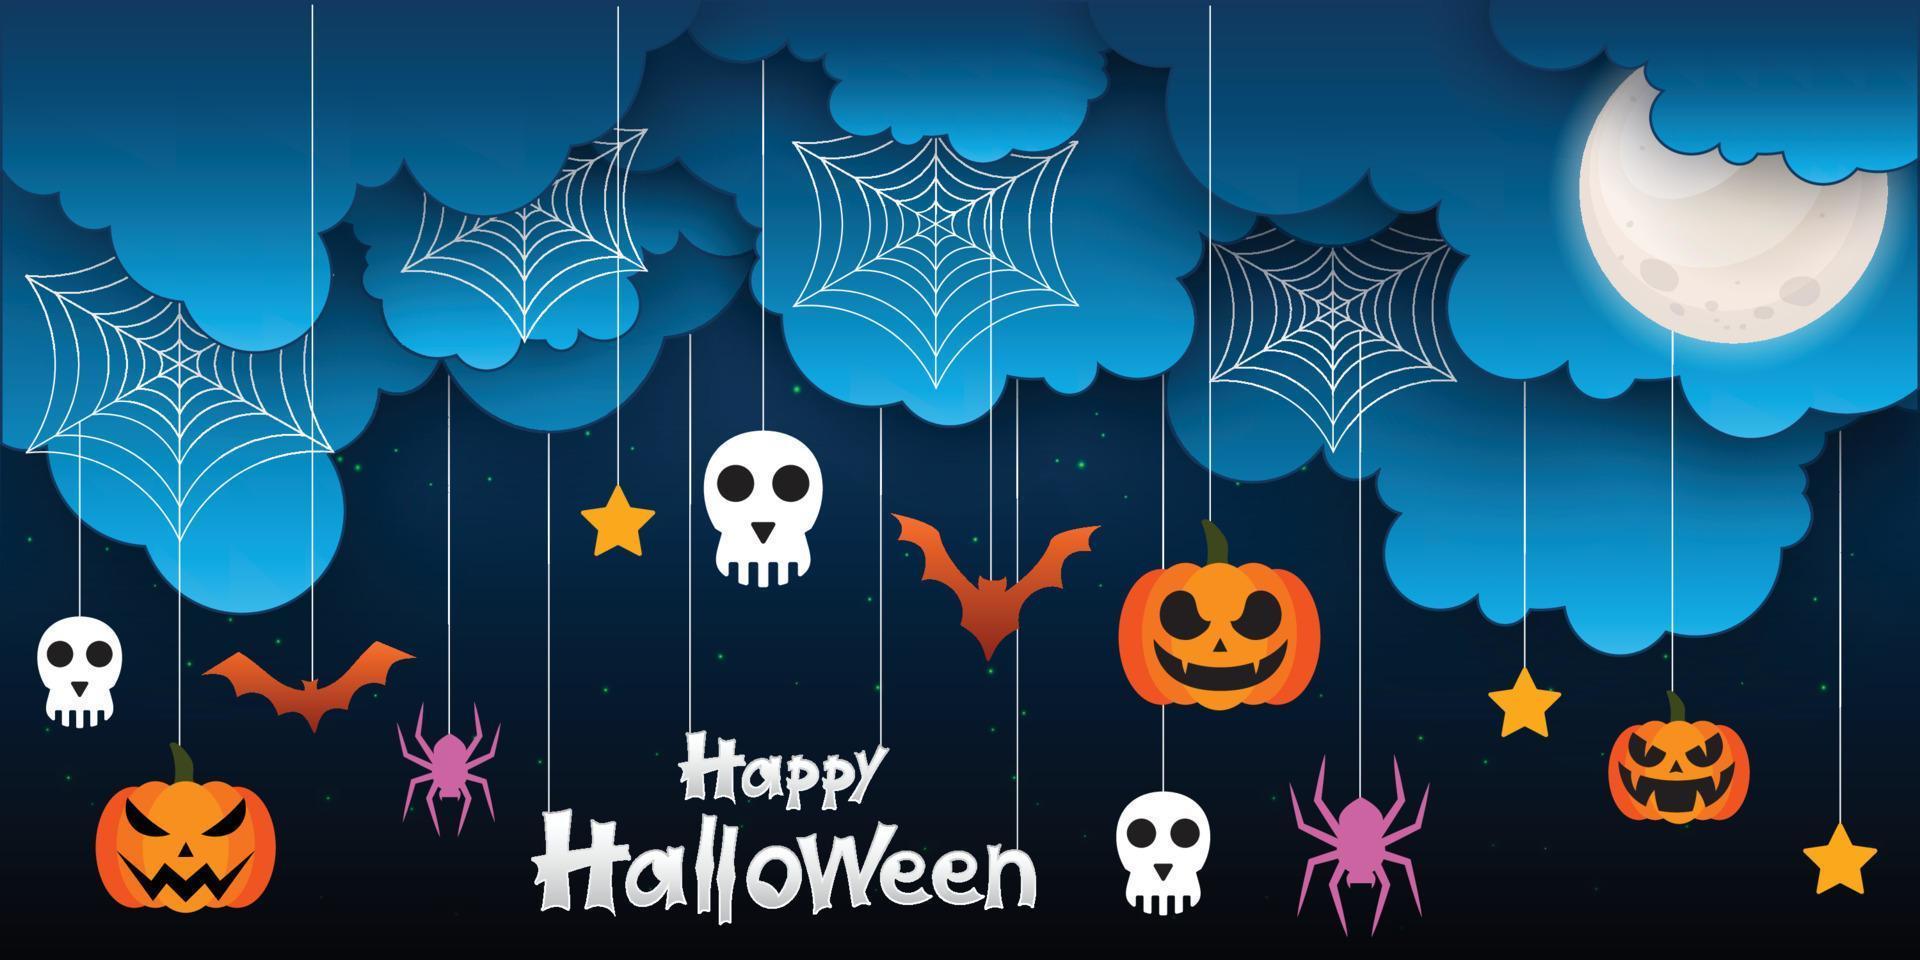 linha do tempo da página de capa do facebook de venda de halloween, modelo de banner de anúncio na web com abóboras, morcegos e nuvem no design de conceito de layout moderno de fundo laranja vetor